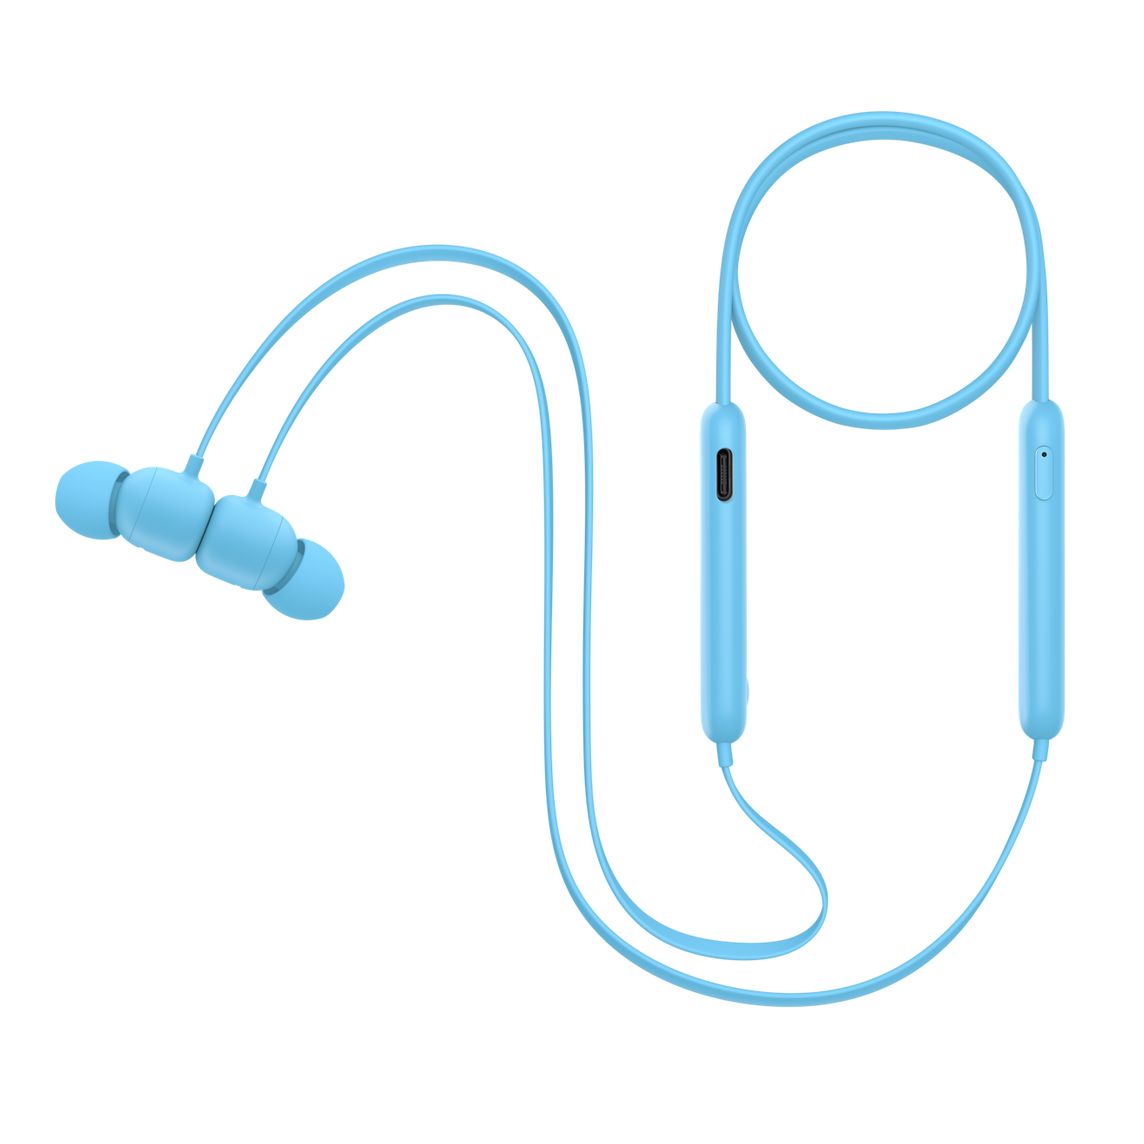  - Audifono In Ear Wireless Flex Beats / Azul 3